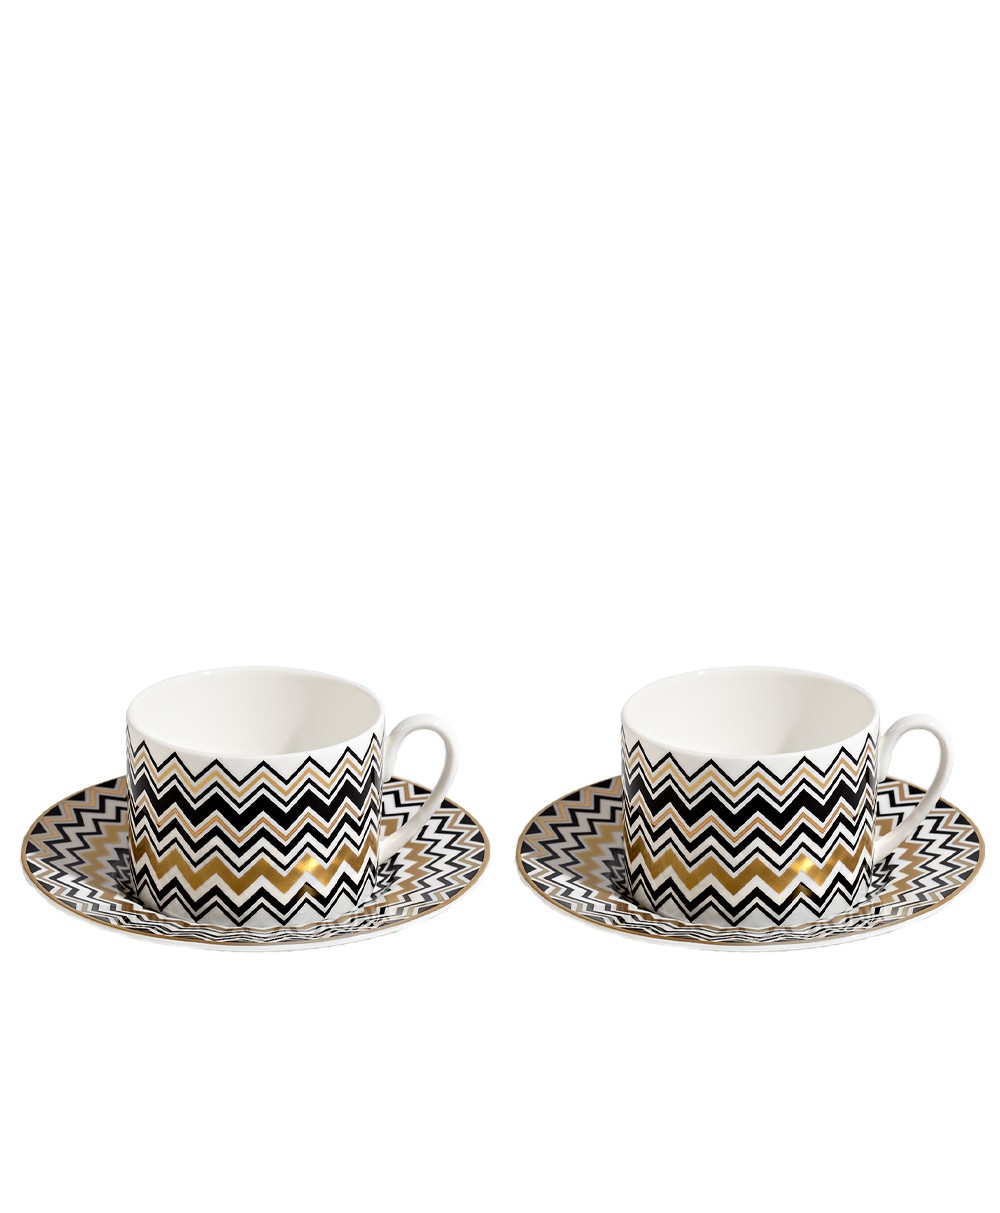 Produktbild der Tee Tasse Zig Zag in der Farbe Gold von Missoni - RAUM concept store